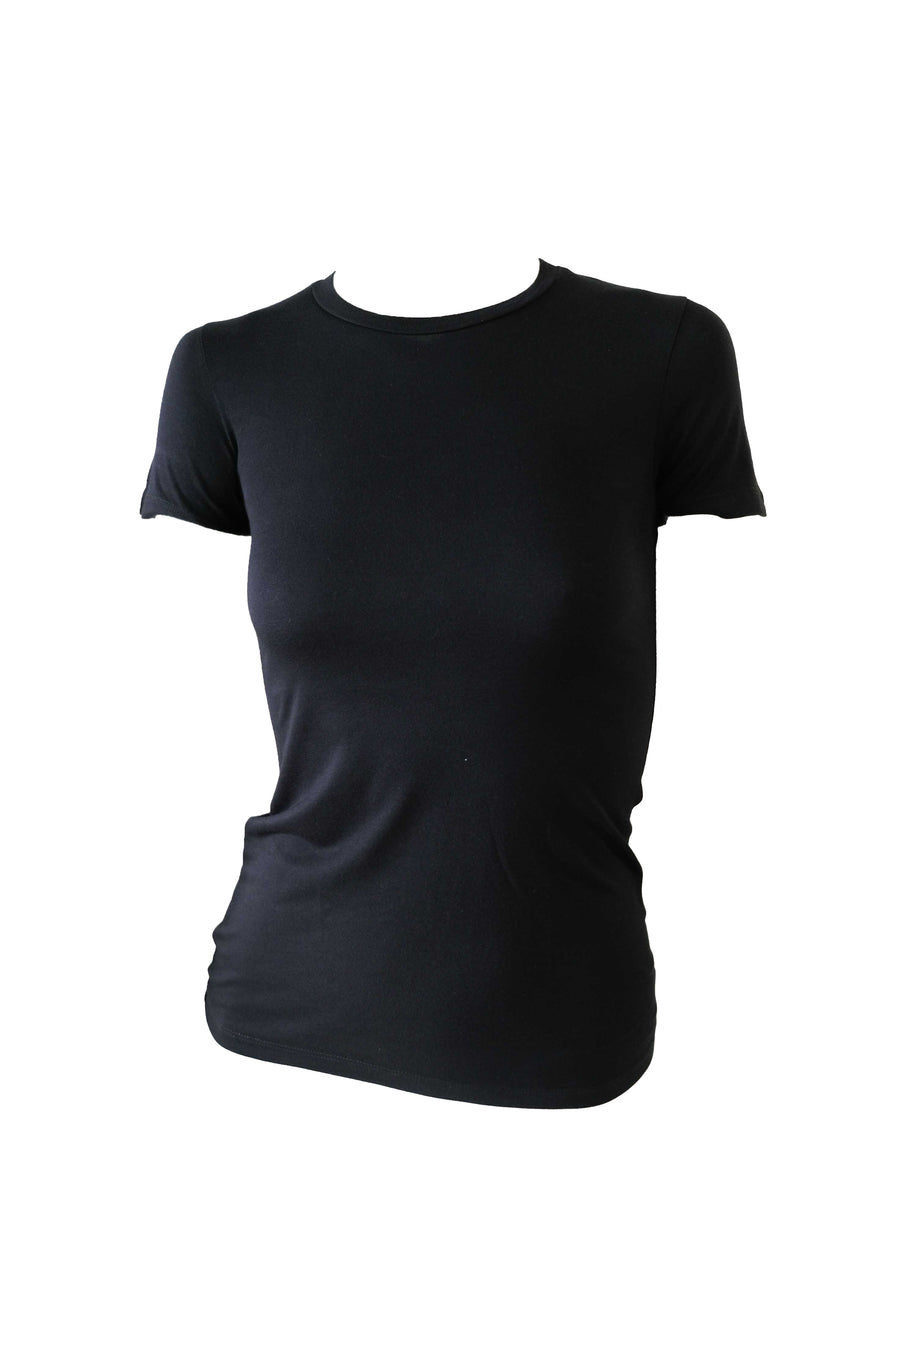 Basic Round Neck Shirt - Black